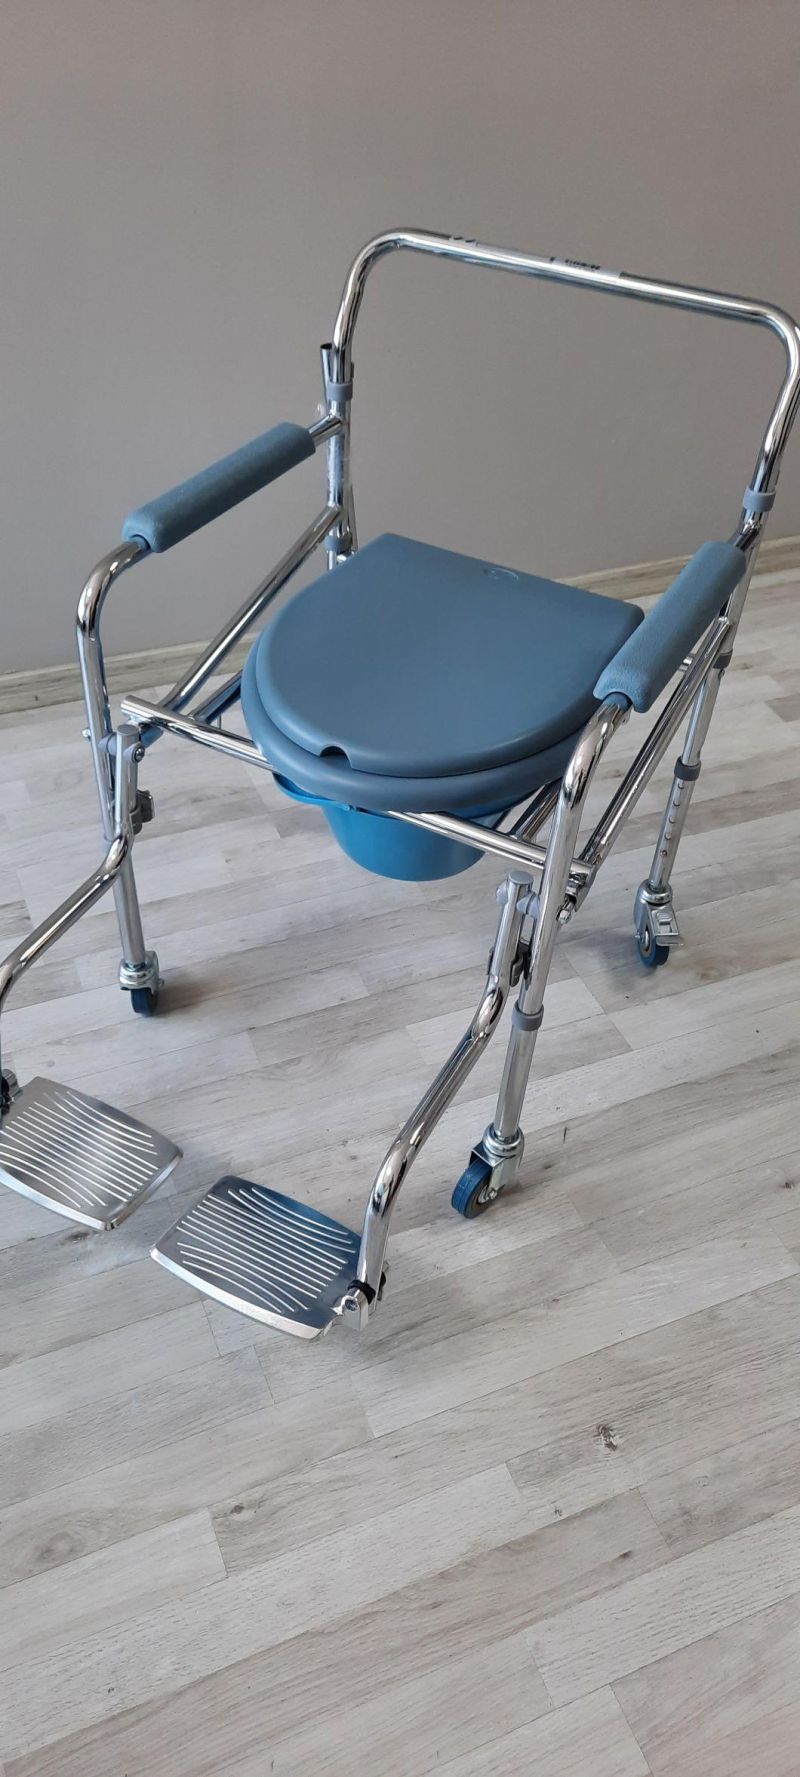 Customized Chrome Medical Equipment Toilet Chair for Elderly Bme 668